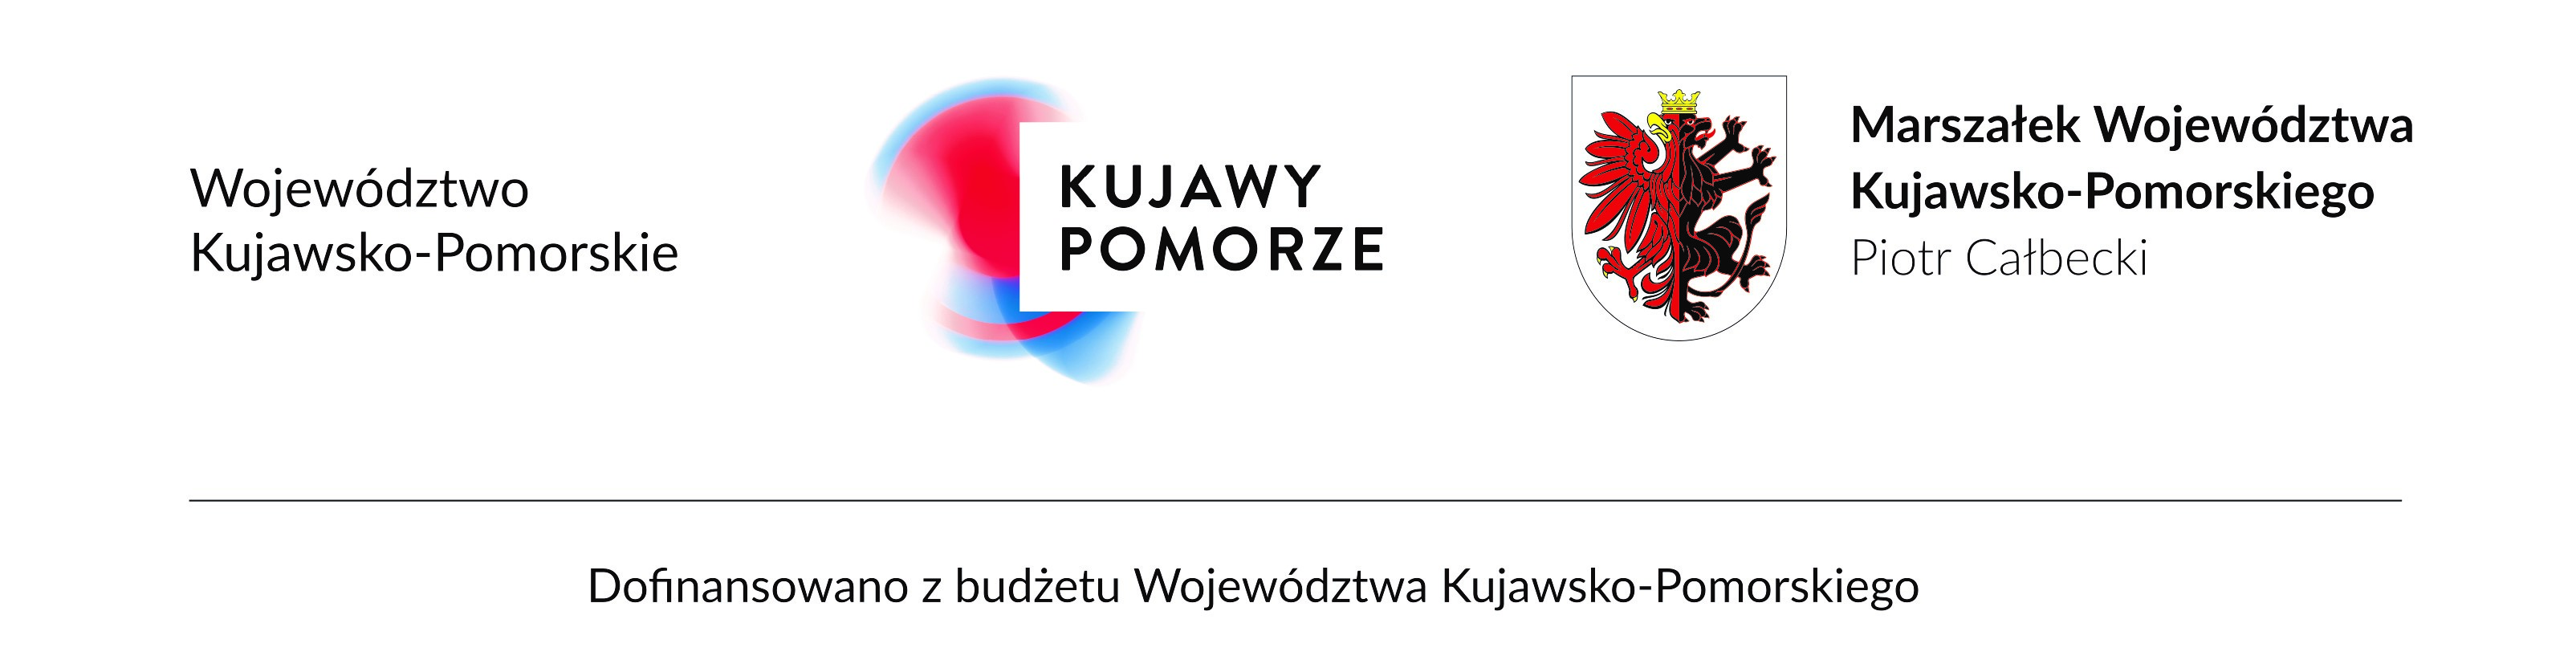 Województwo Kujawsko-Pomorskie logo